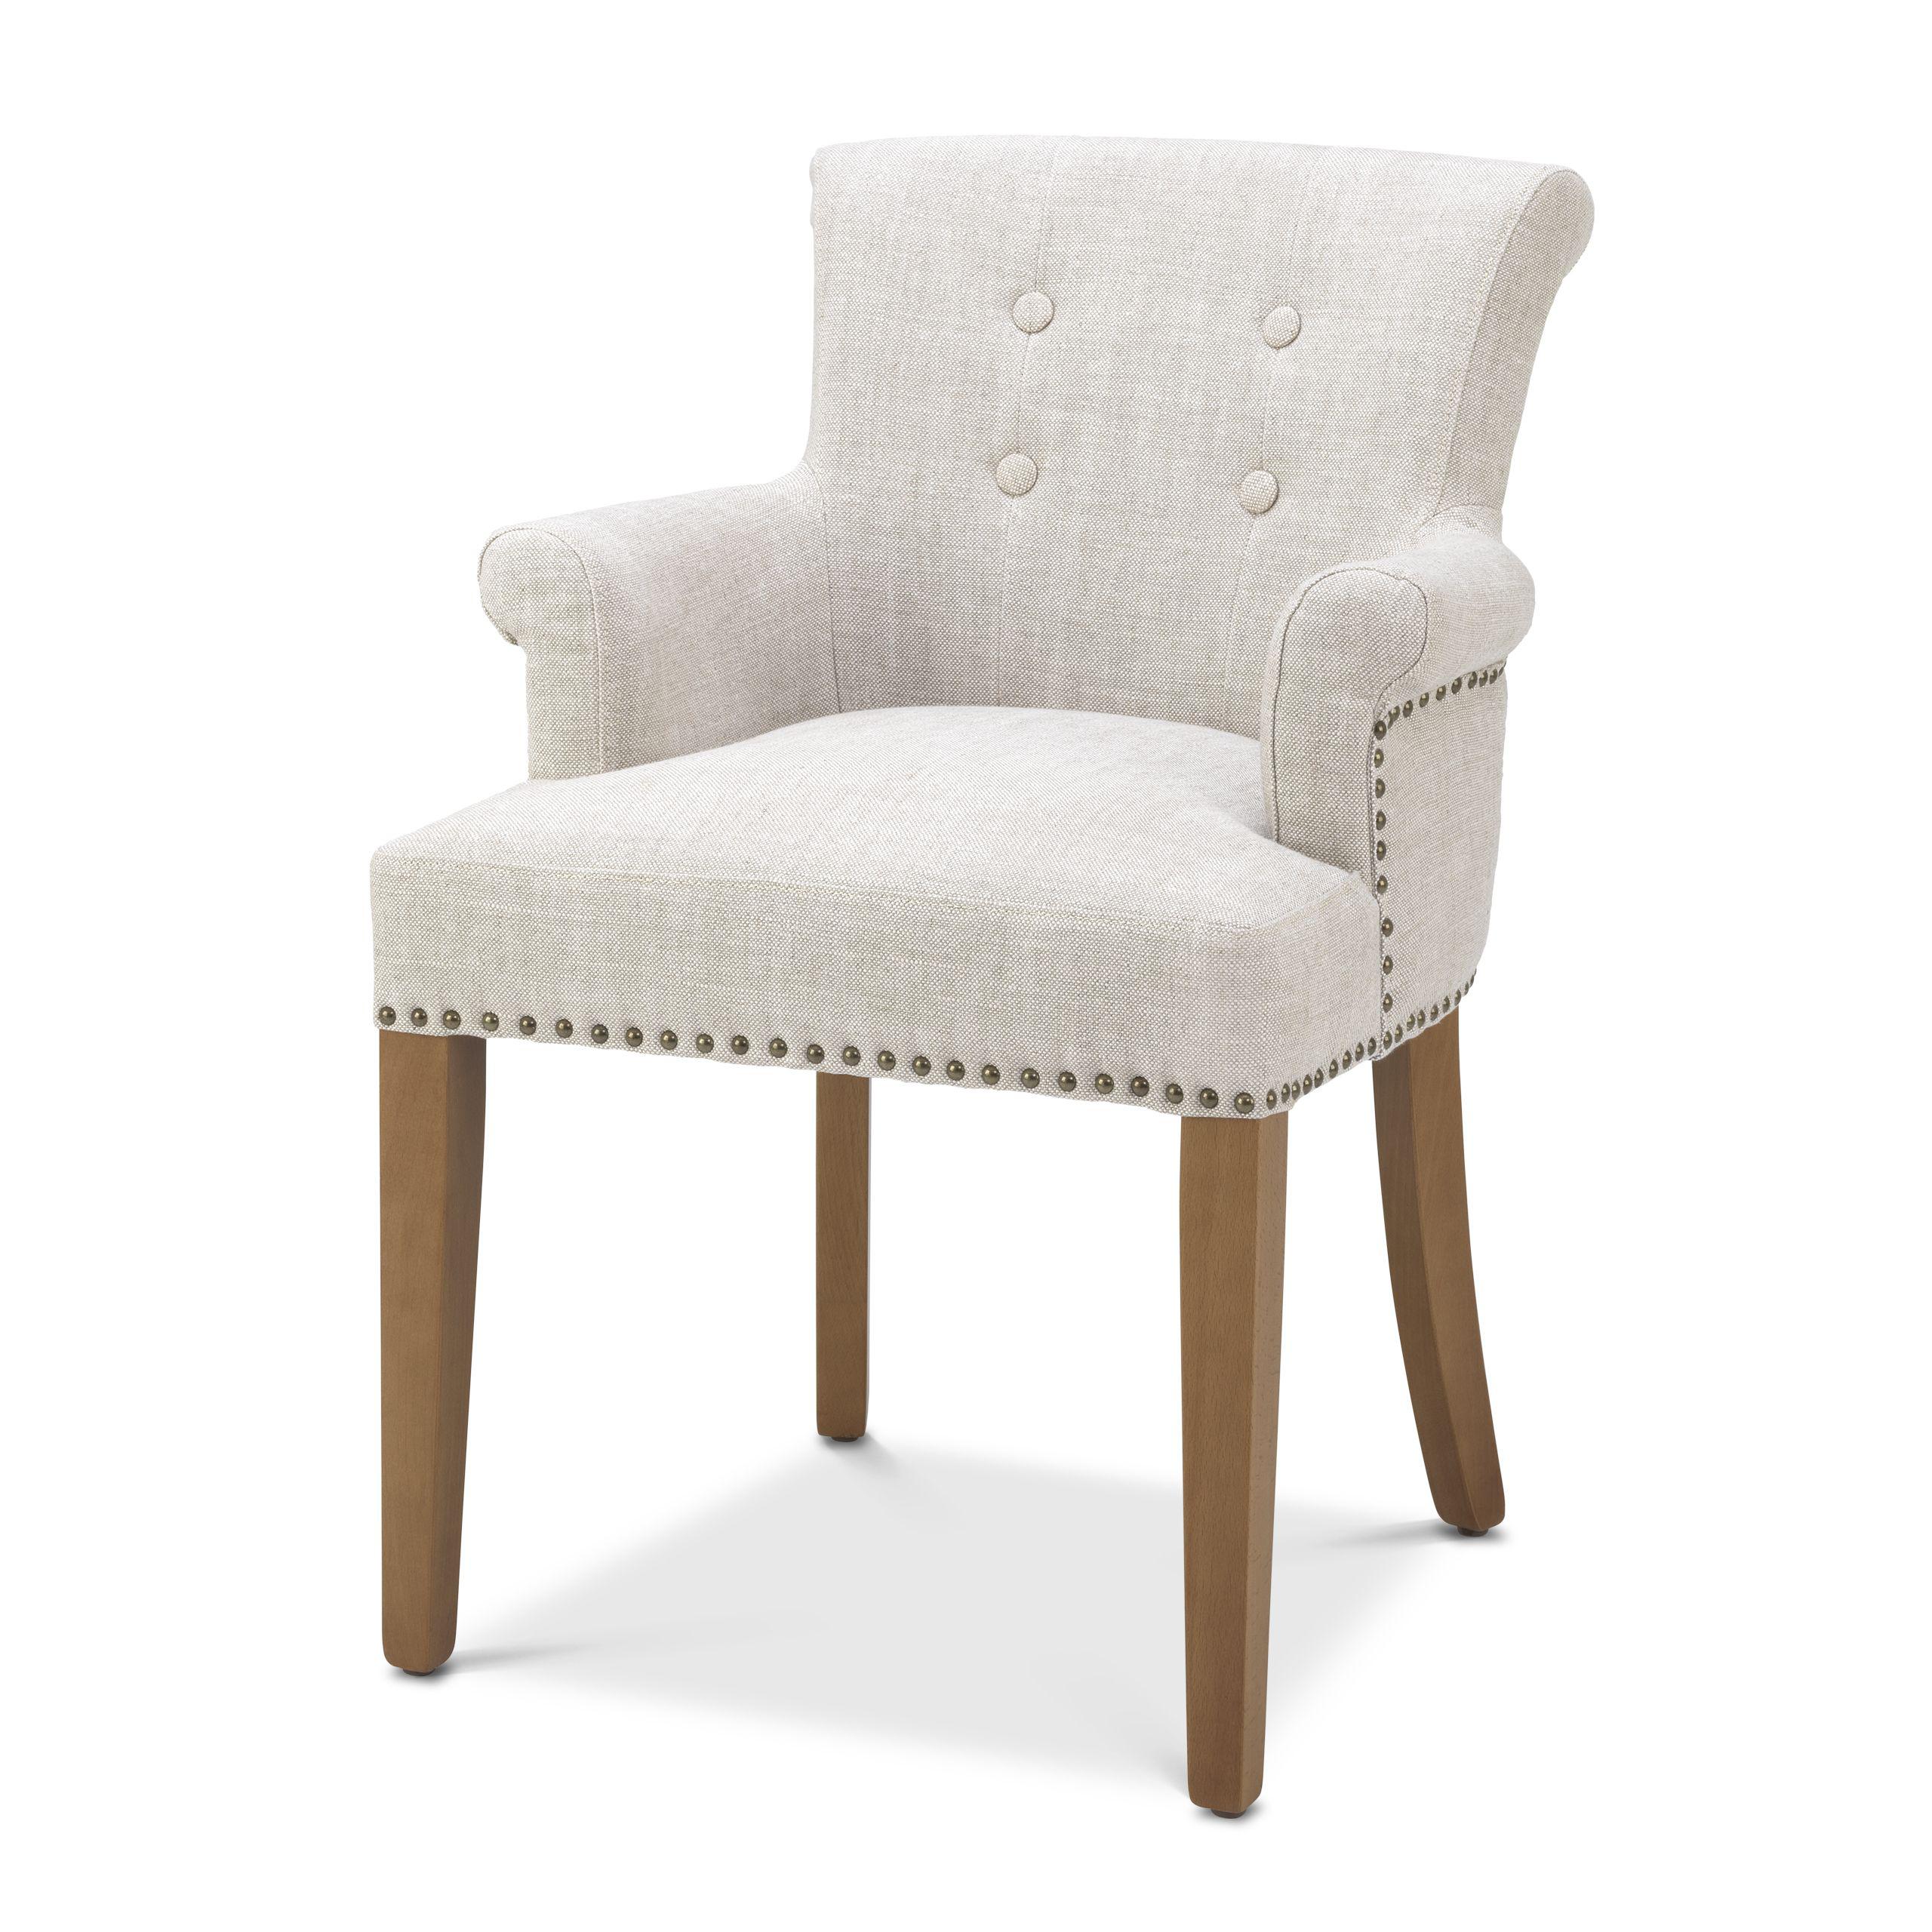 Купить Стул с подлокотником Dining Chair Key Largo with arm в интернет-магазине roooms.ru